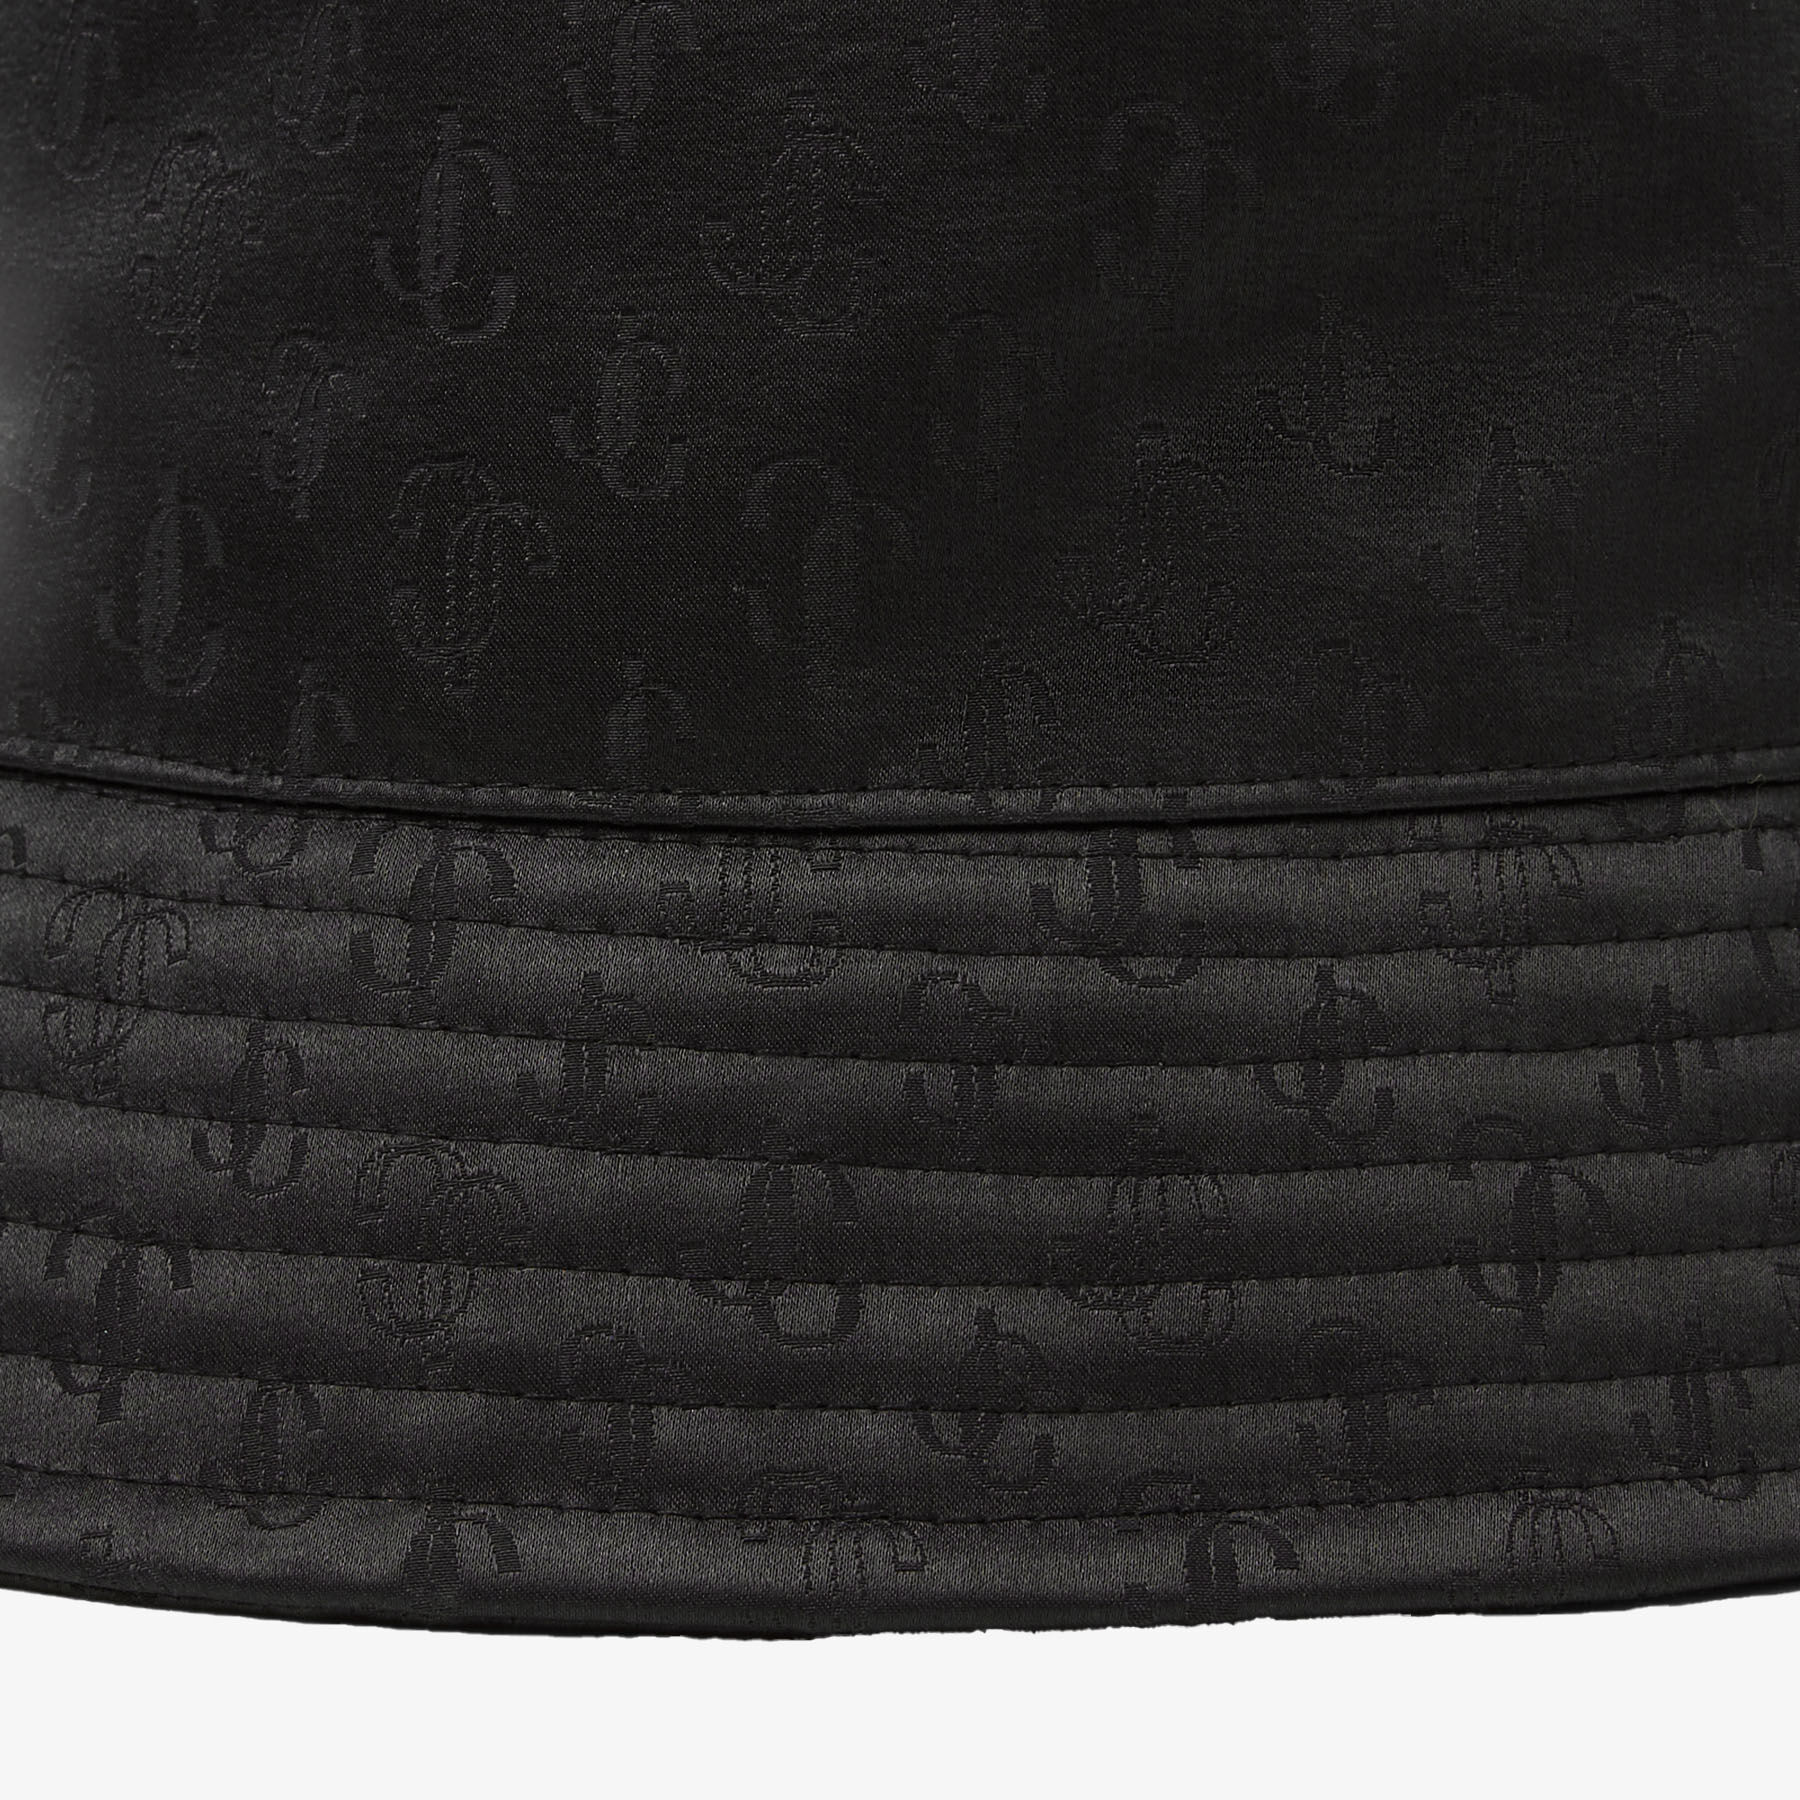 Louis Vuitton Monogram Essential Cap Black Cotton. Size 62